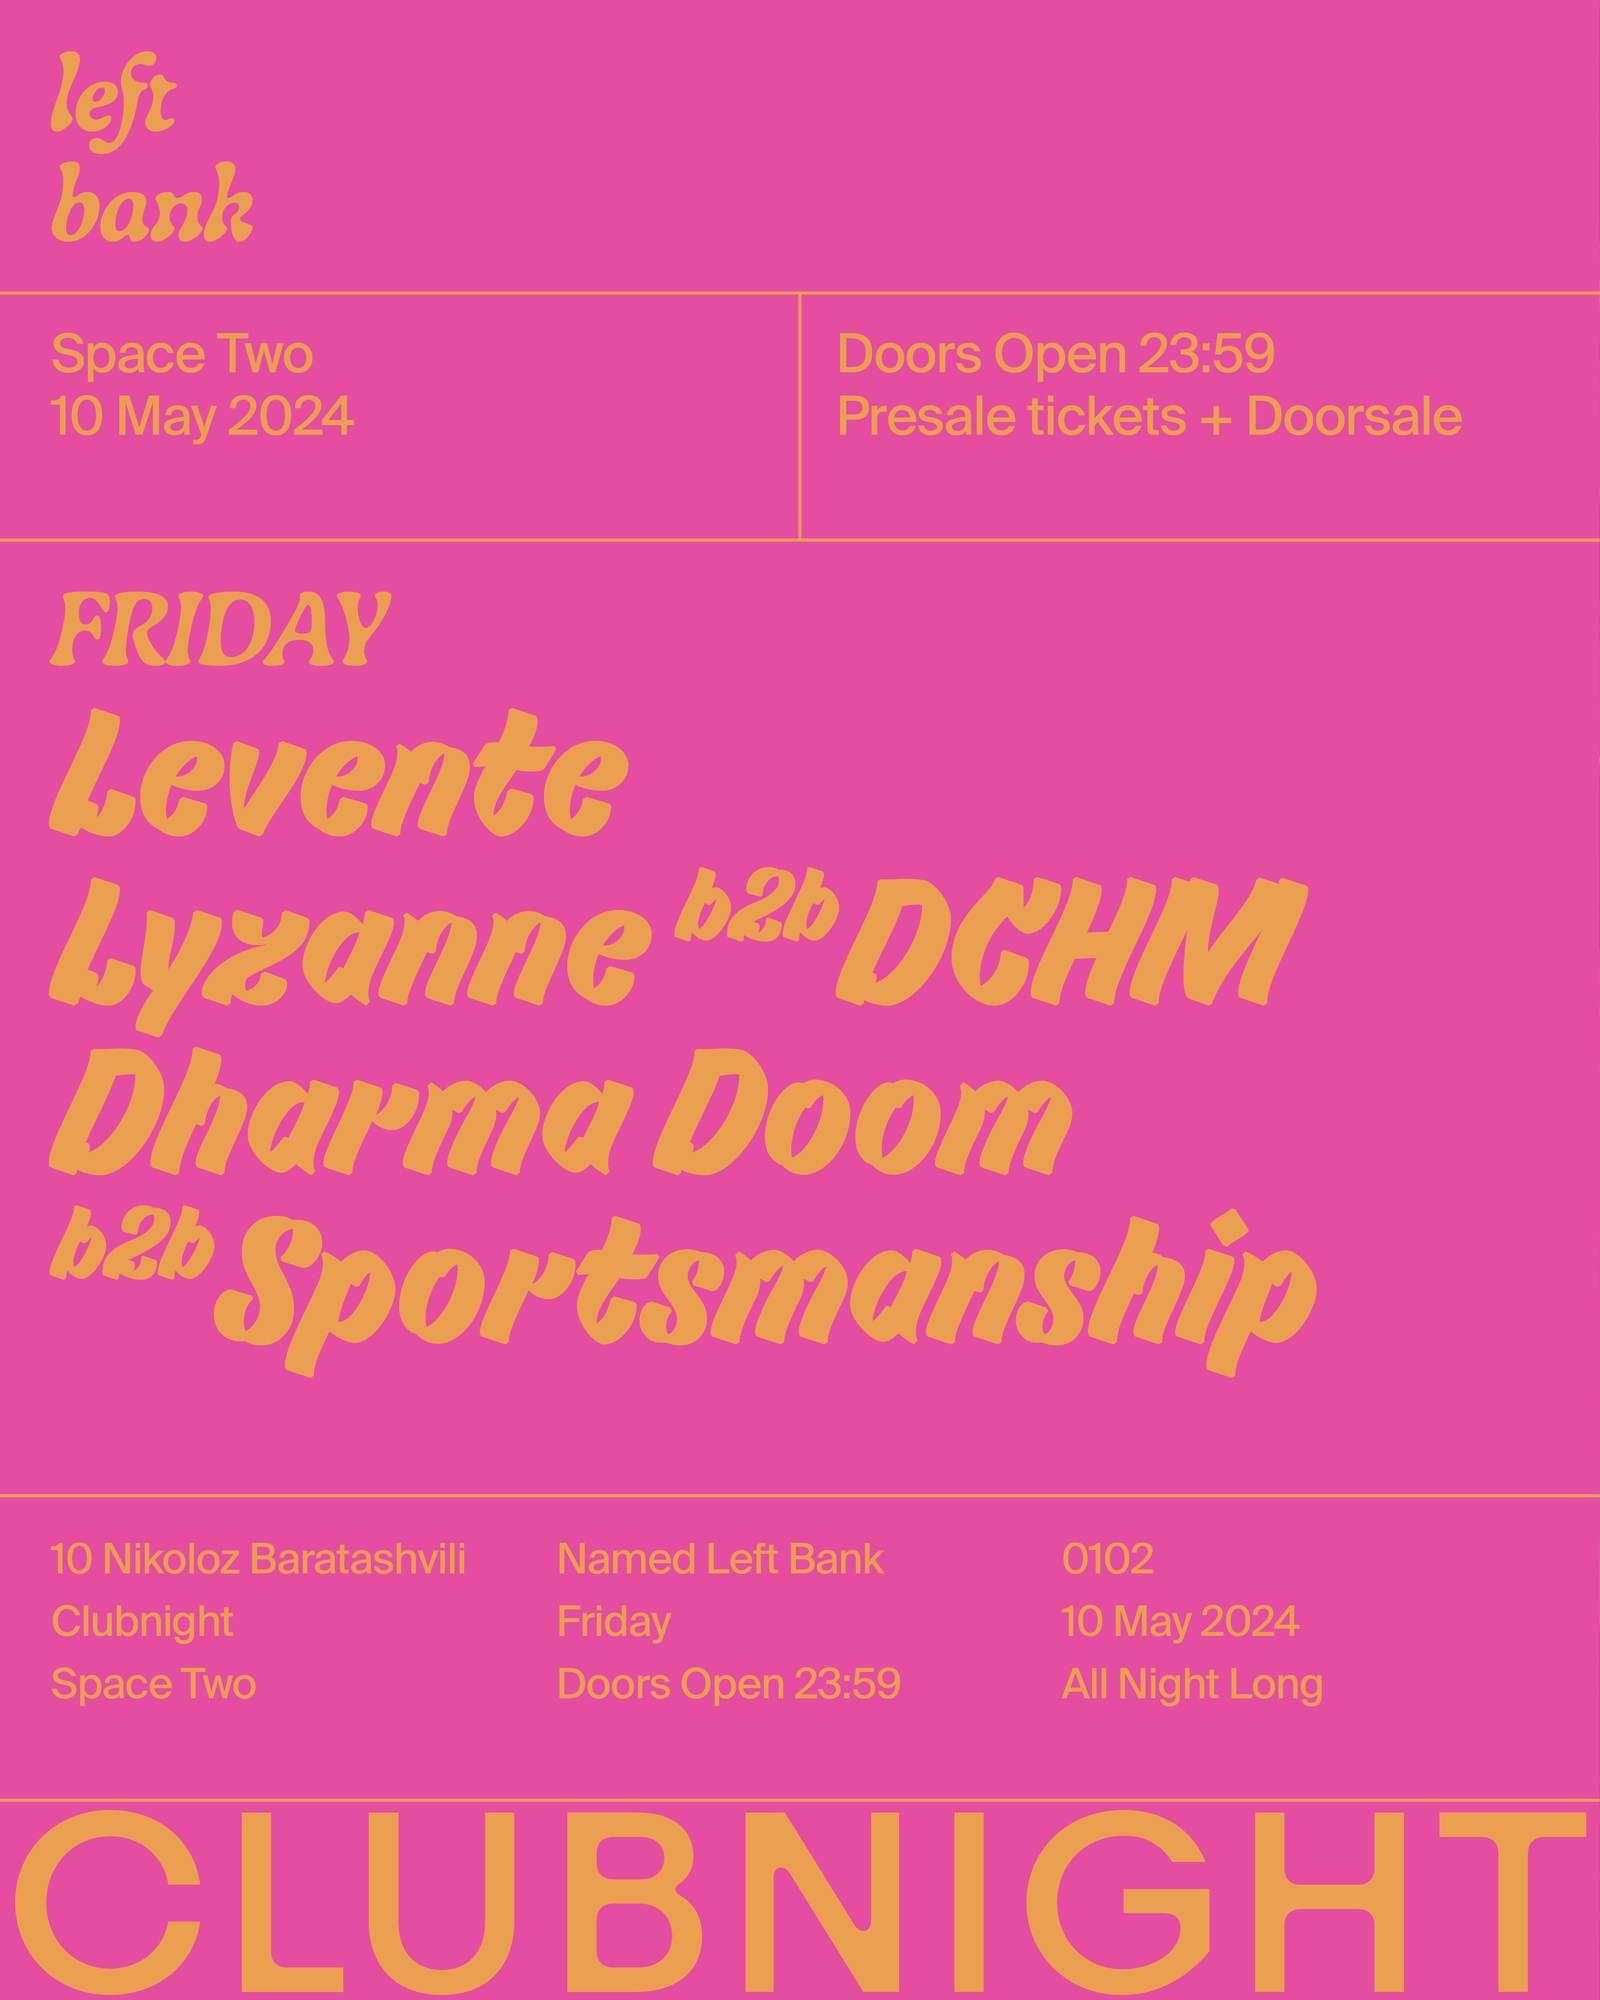 Left Bank Clubnight: lyzanne b2b DCHM • Levente • Dharma Doom b2b Sportsmanship - フライヤー表